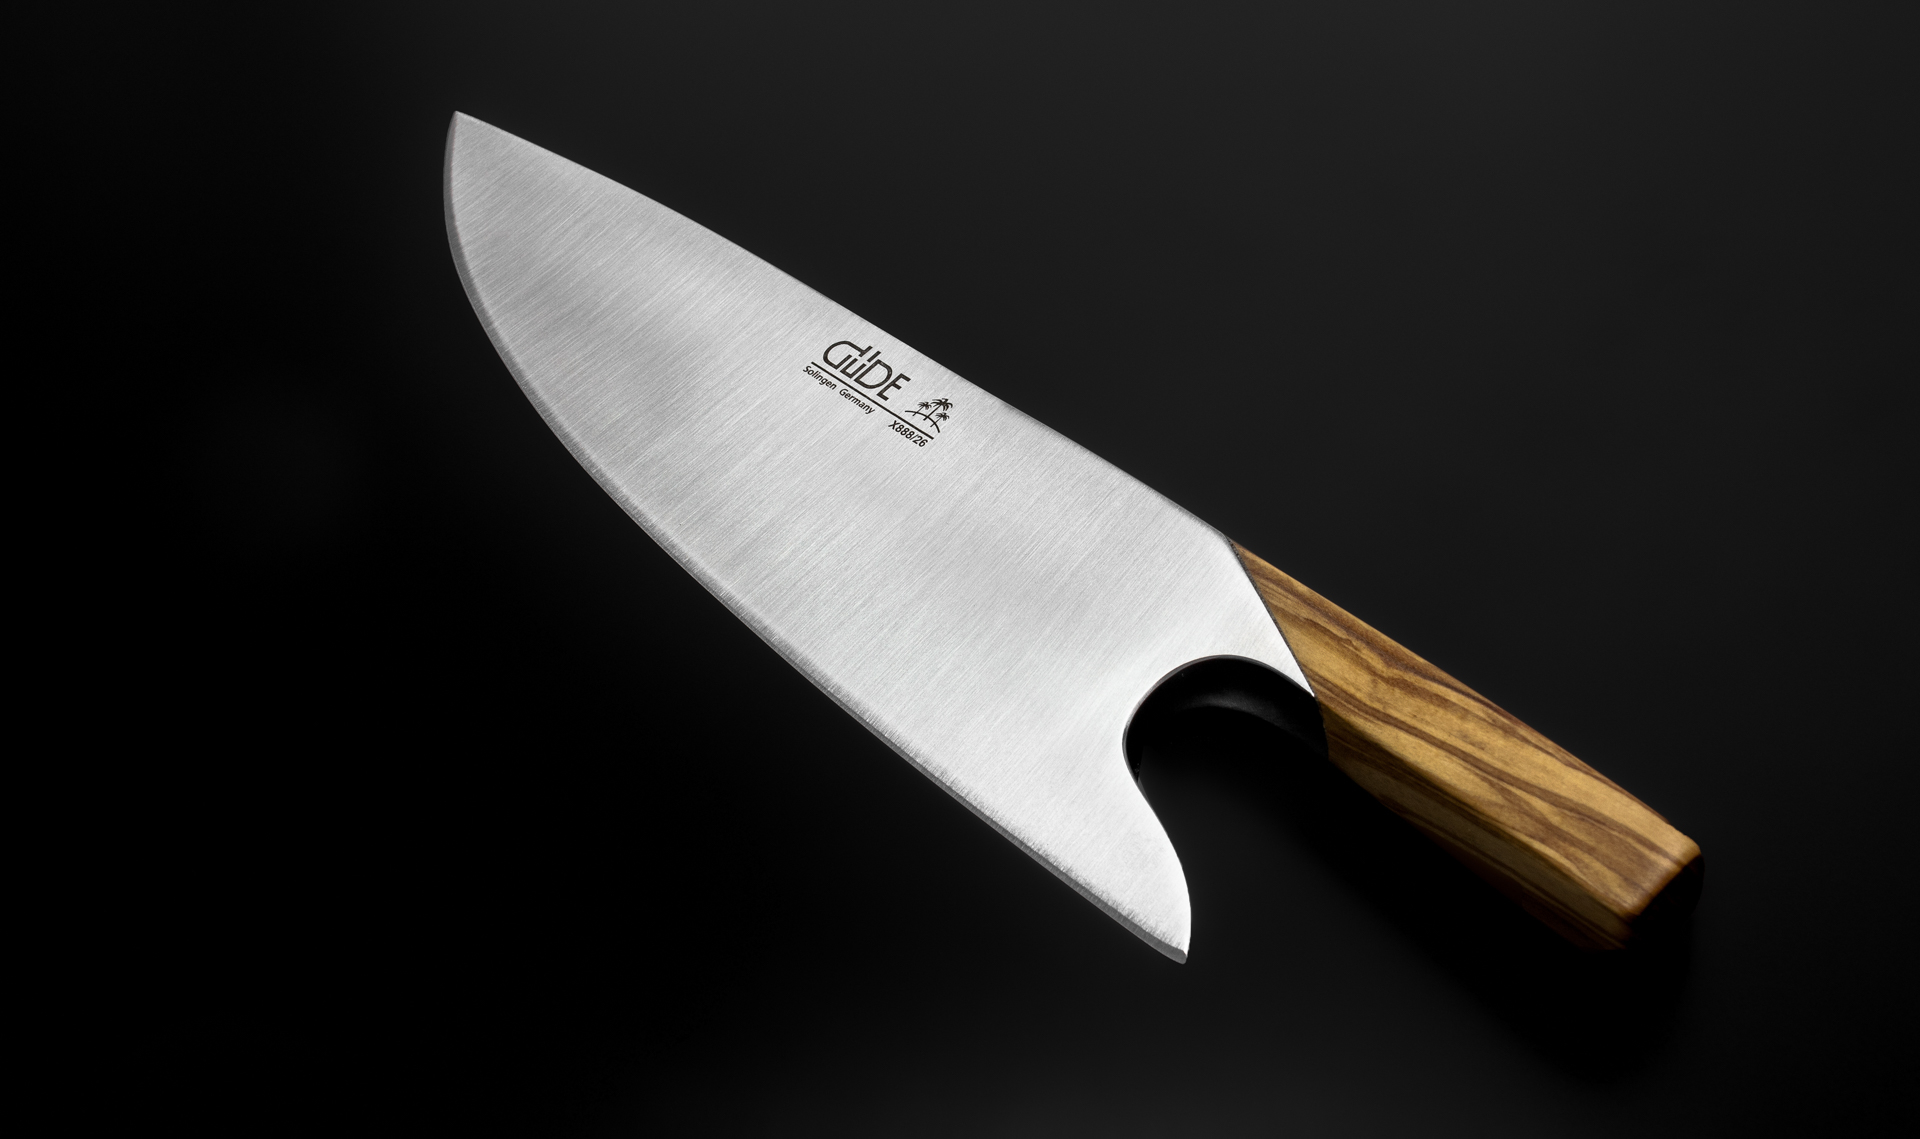 Visuel de THE KNIFE. - GÜDE THE KNIFE. Couteau de chef - La (re-)découverte de la coupe.